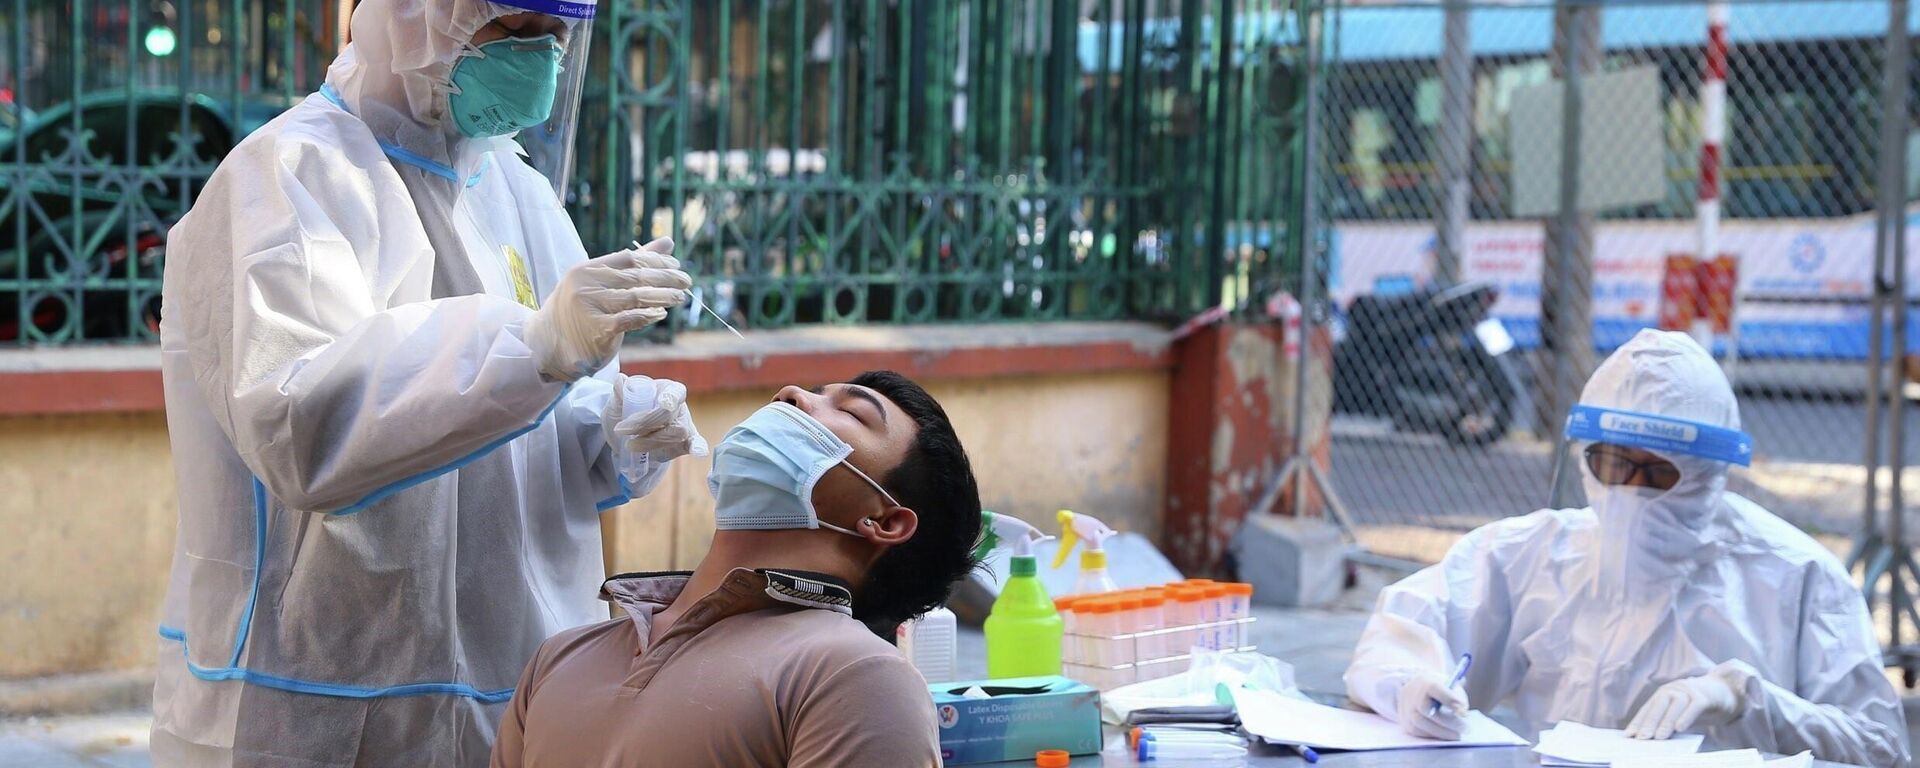 Nhân viên y tế lấy mẫu xét nghiệm sàng lọc COVID-19 cho người dân trong khu vực bị phong tỏa thuộc phường Nguyễn Du (Hà Nội) - Sputnik Việt Nam, 1920, 28.12.2021